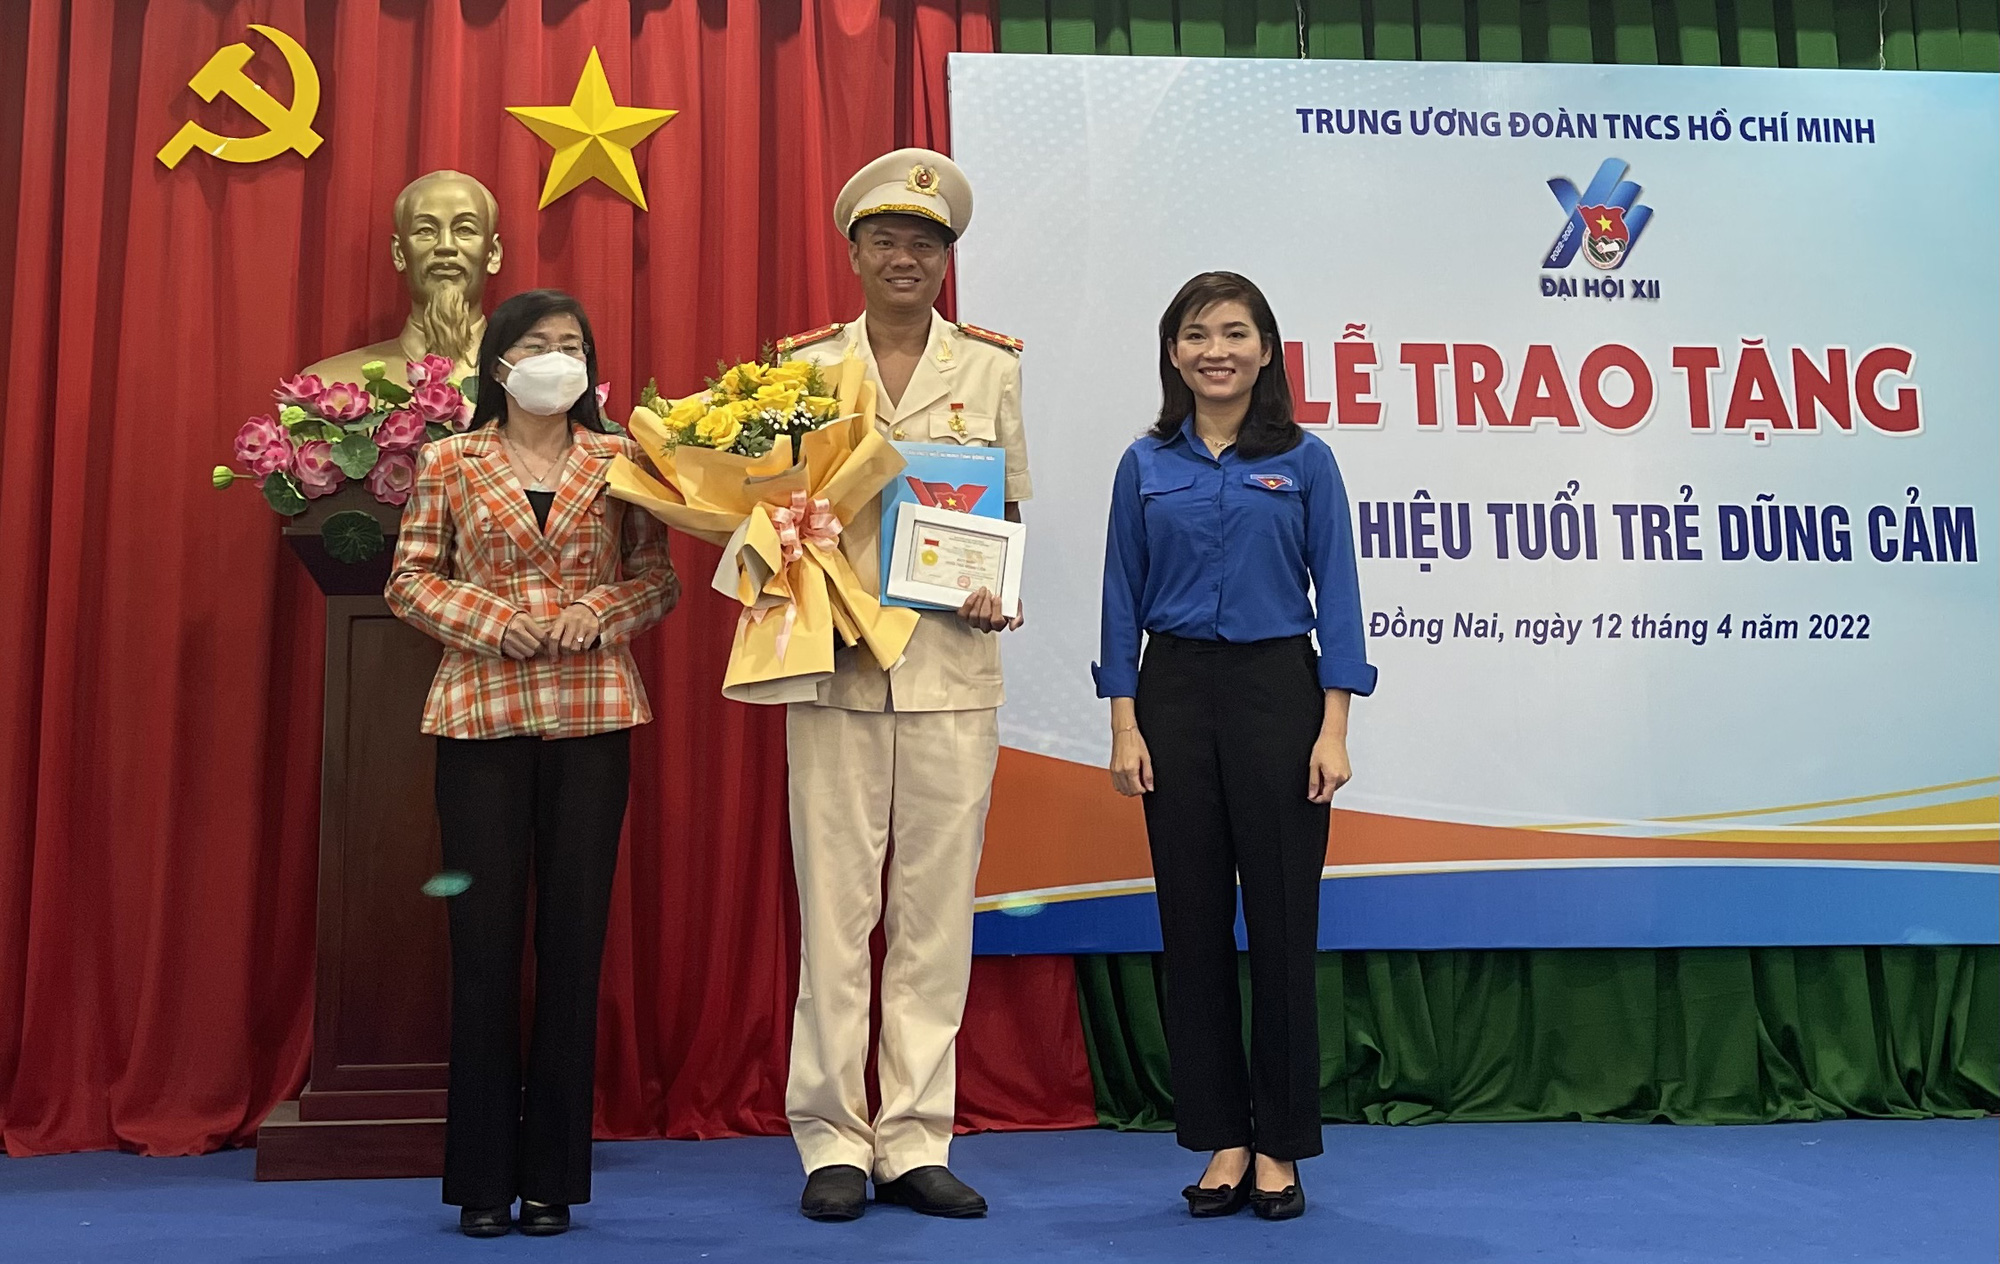 Trung ương Đoàn trao tặng huy hiệu Tuổi trẻ dũng cảm cho Đại úy Thái Ngô Hiếu - Ảnh 2.